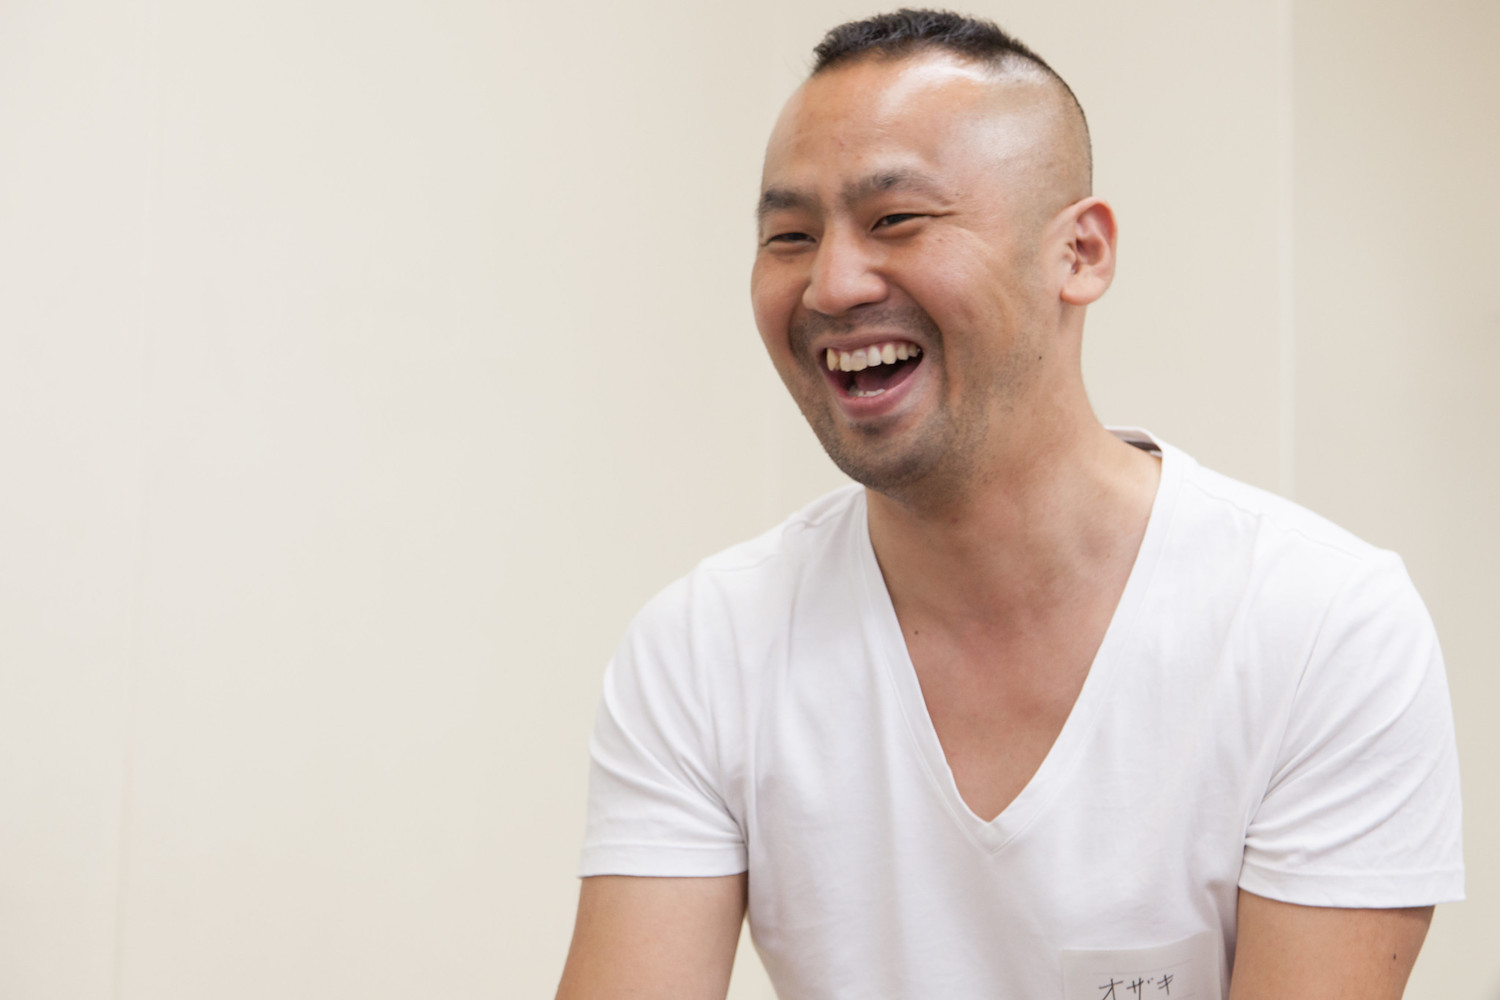 尾崎さんが白いVネックTシャツを着て口を開けて笑っている写真です。尾崎さんは頂部が短髪で、横と後ろを剃り上げたGIカットがトレードマークです